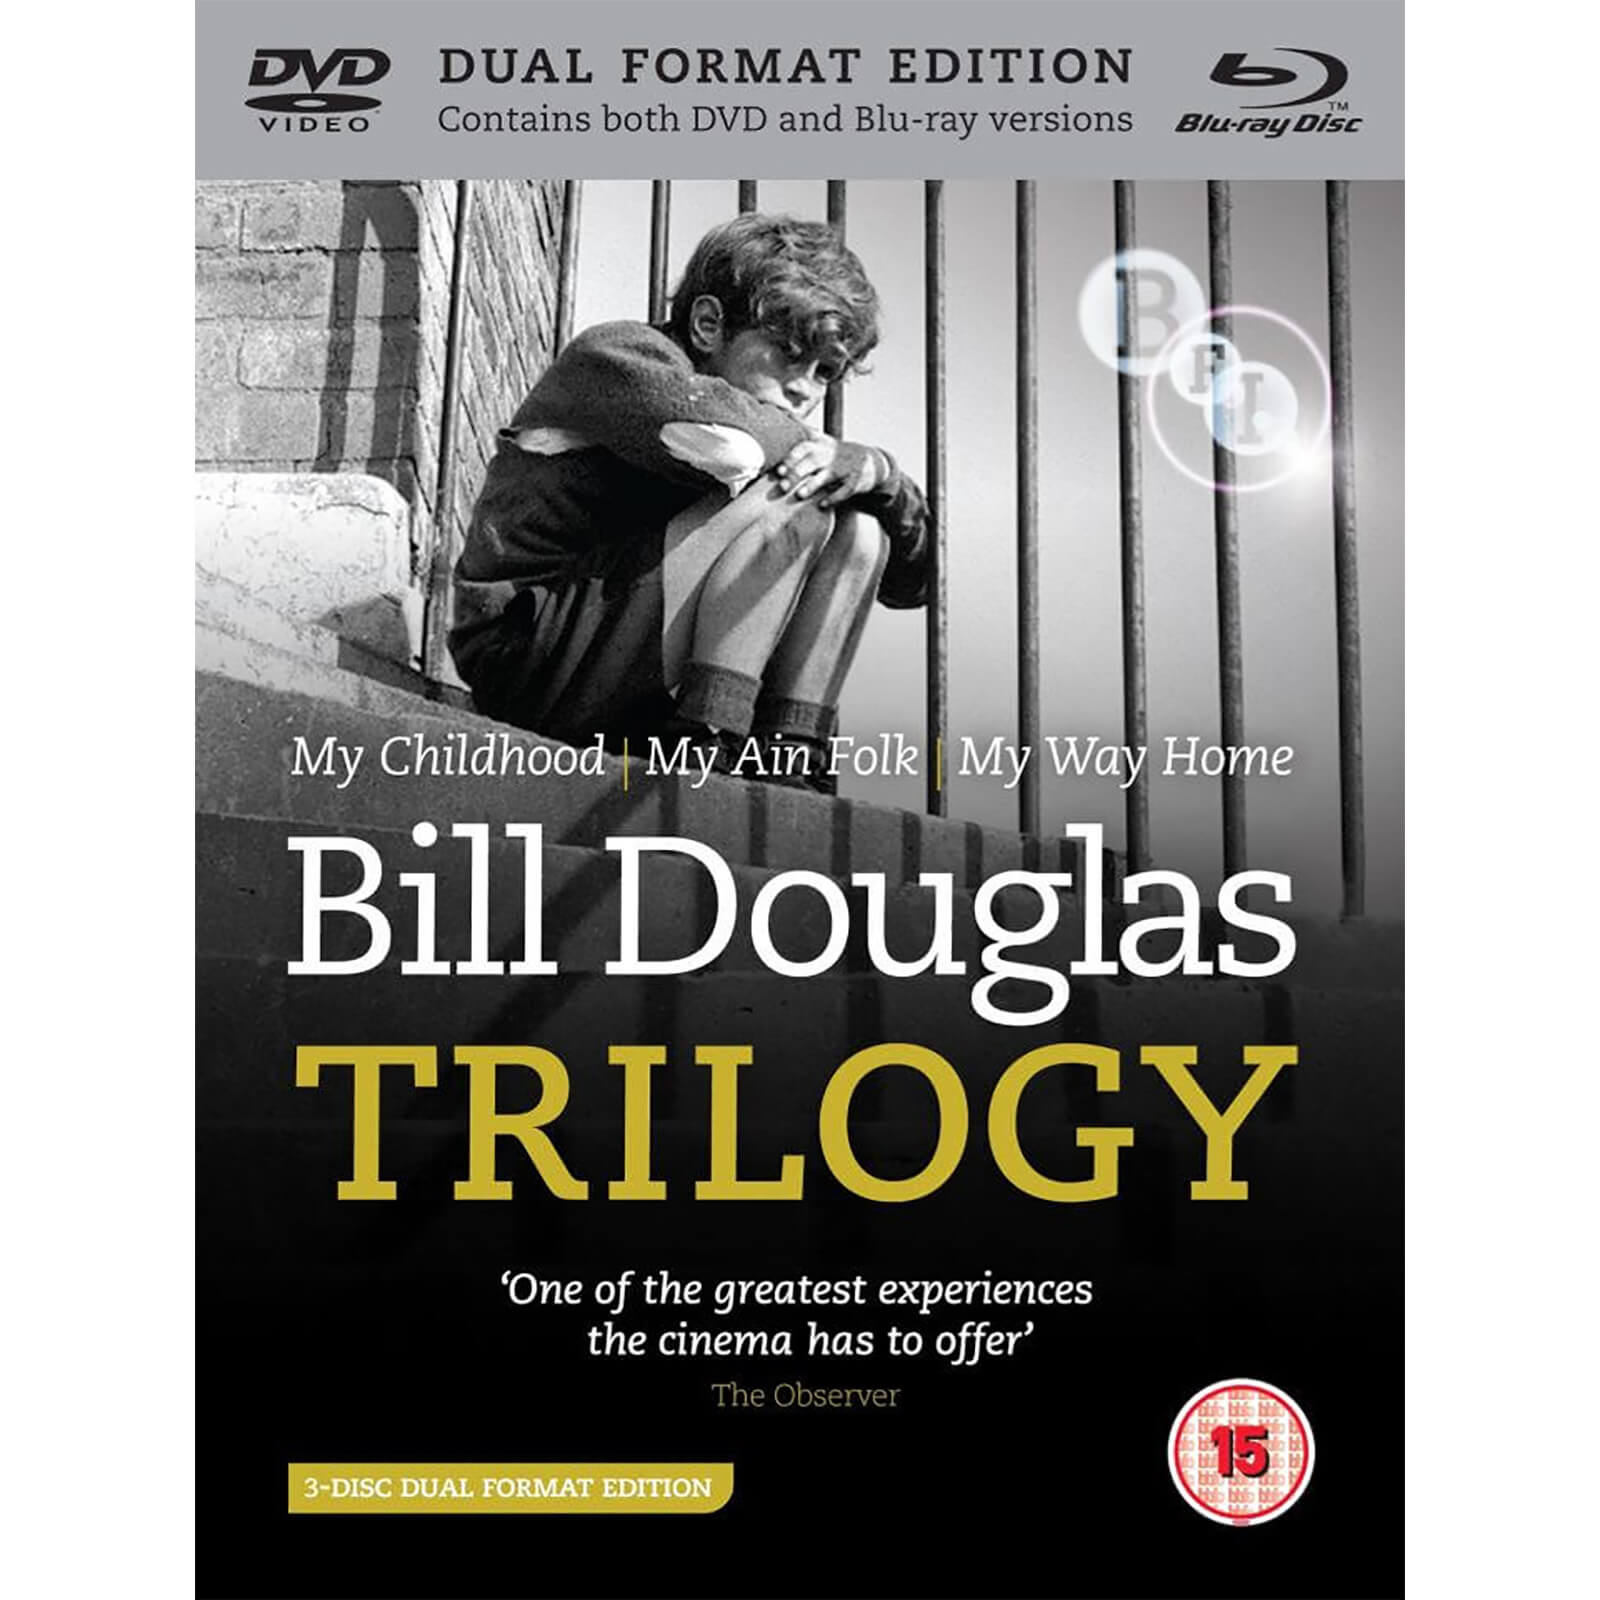 Bill Douglas Trilogie (1 Blu-Ray und 2 DVDs)